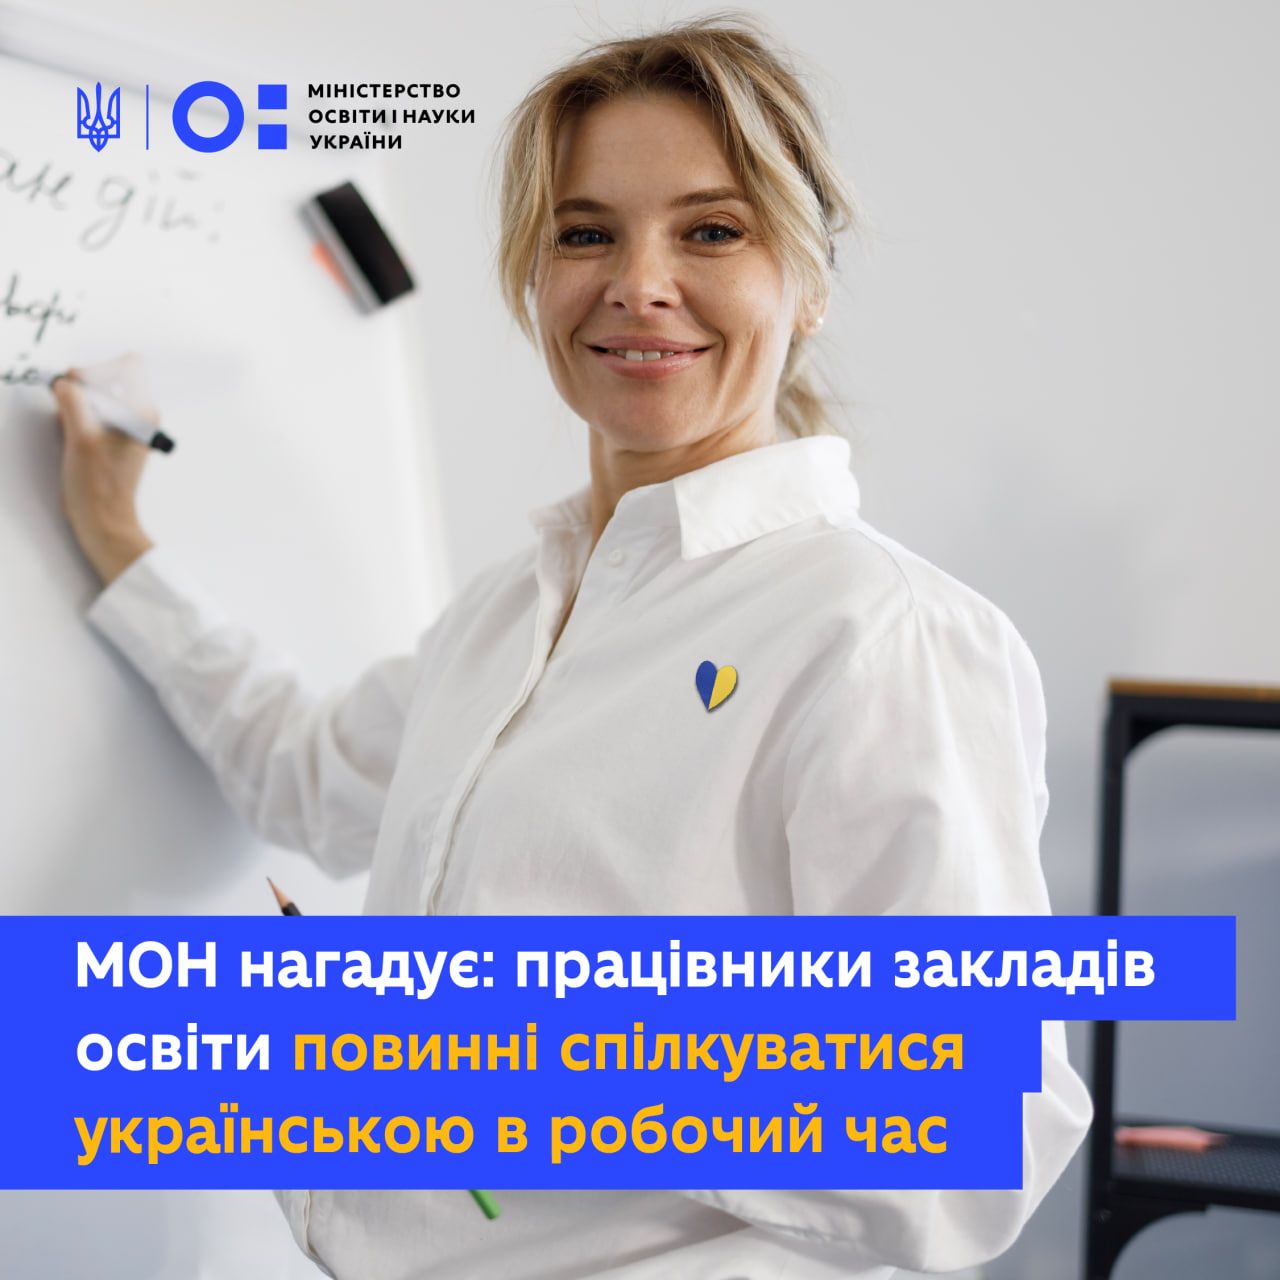 У робочий час освітяни повинні спілкуватися між собою українською - МОН